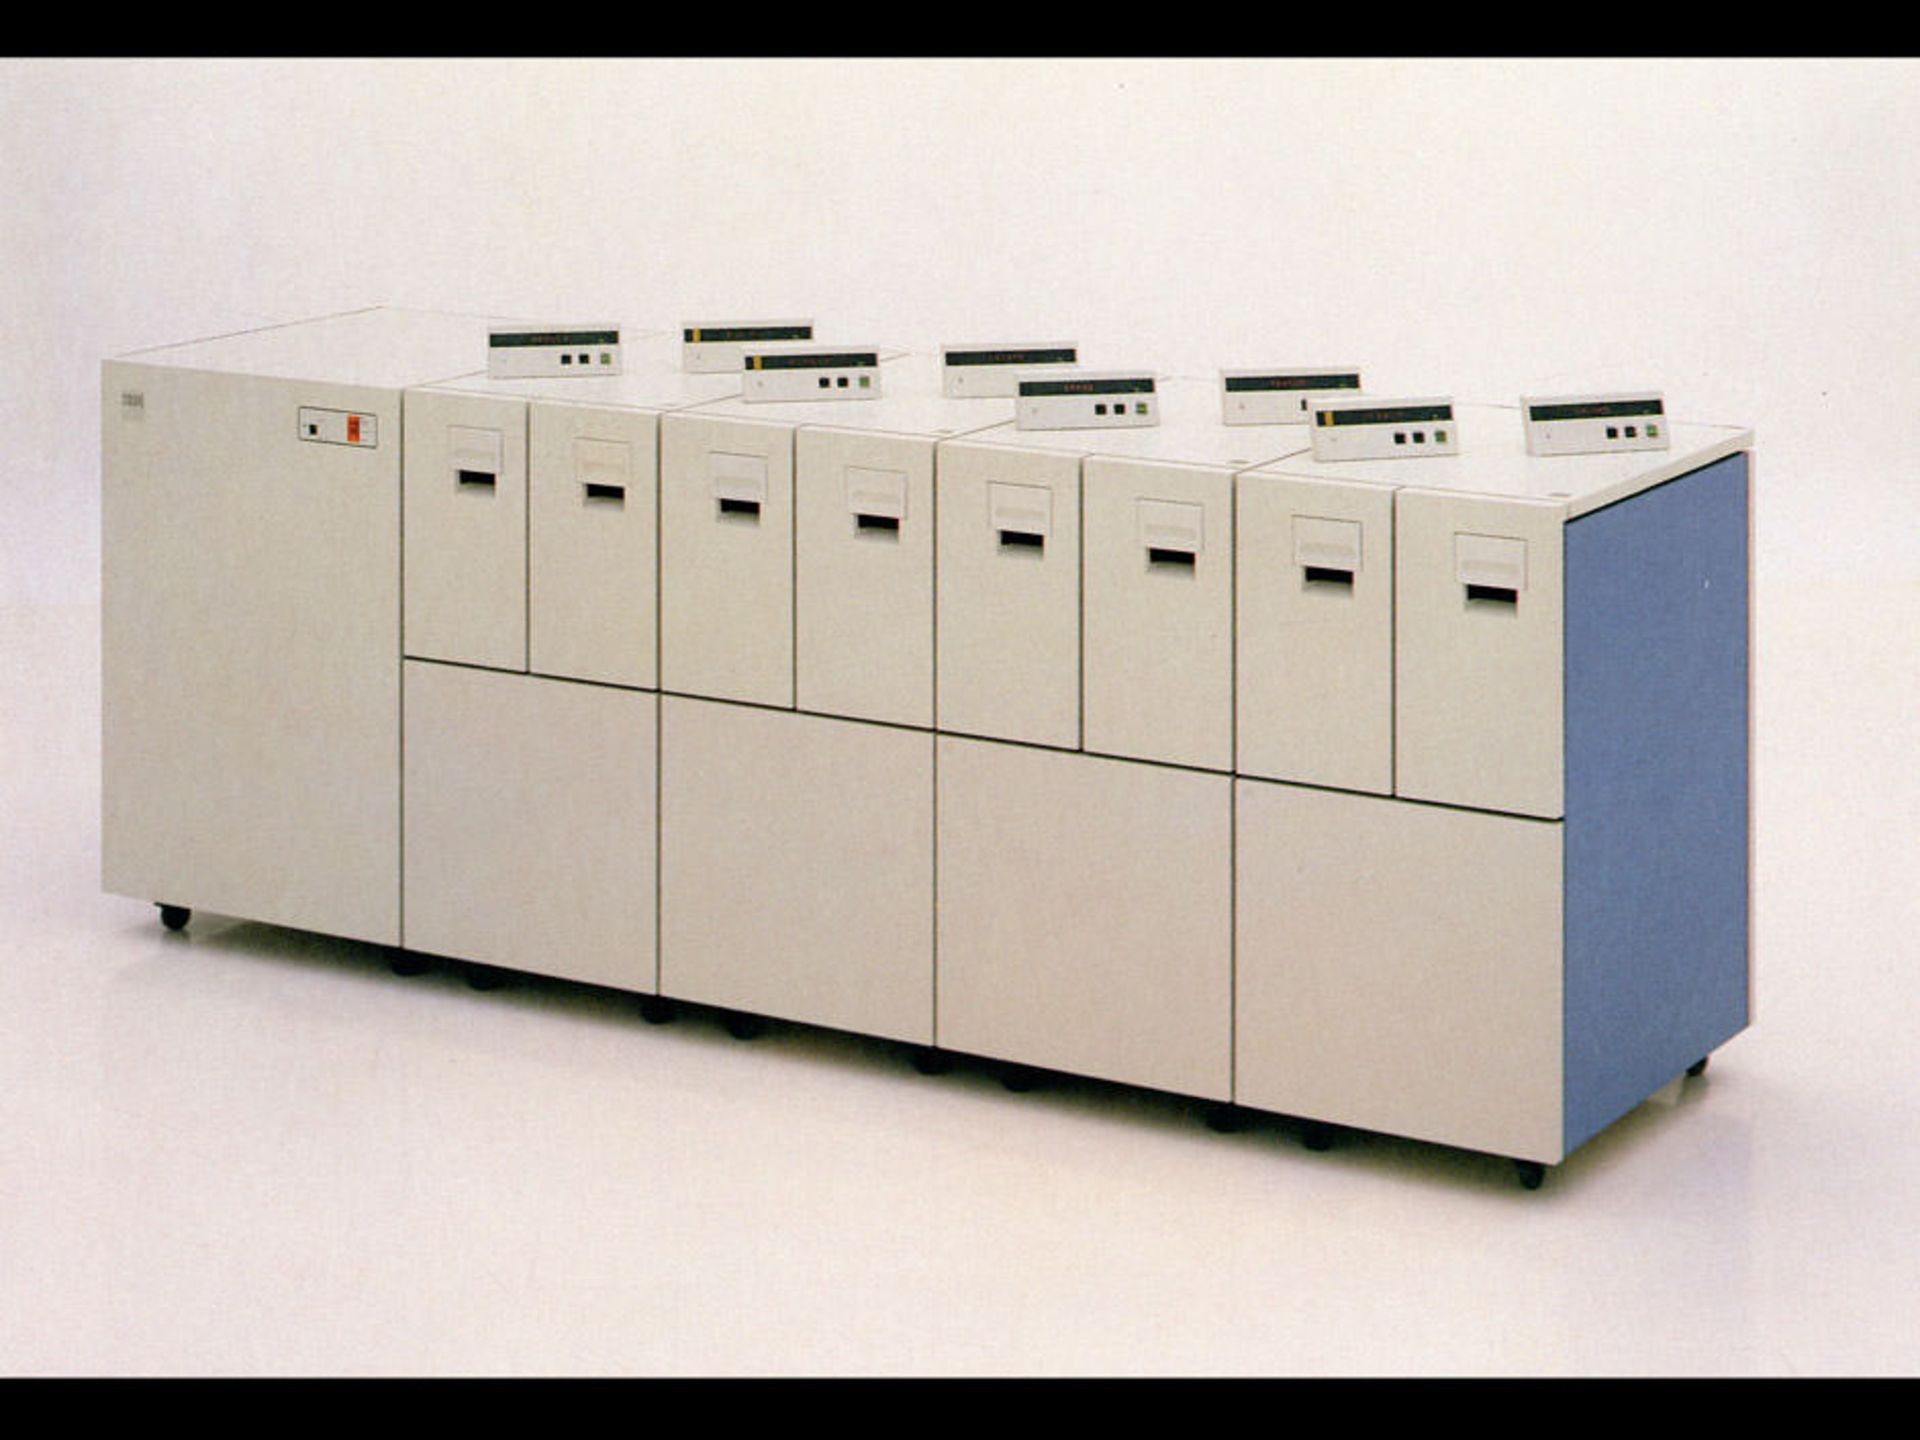 مرجع متخصصين ايران ۱۹۸۴: معرفي فناوري هدفيلم باريك (IBM 3480) و كاتريج ۴ در ۵